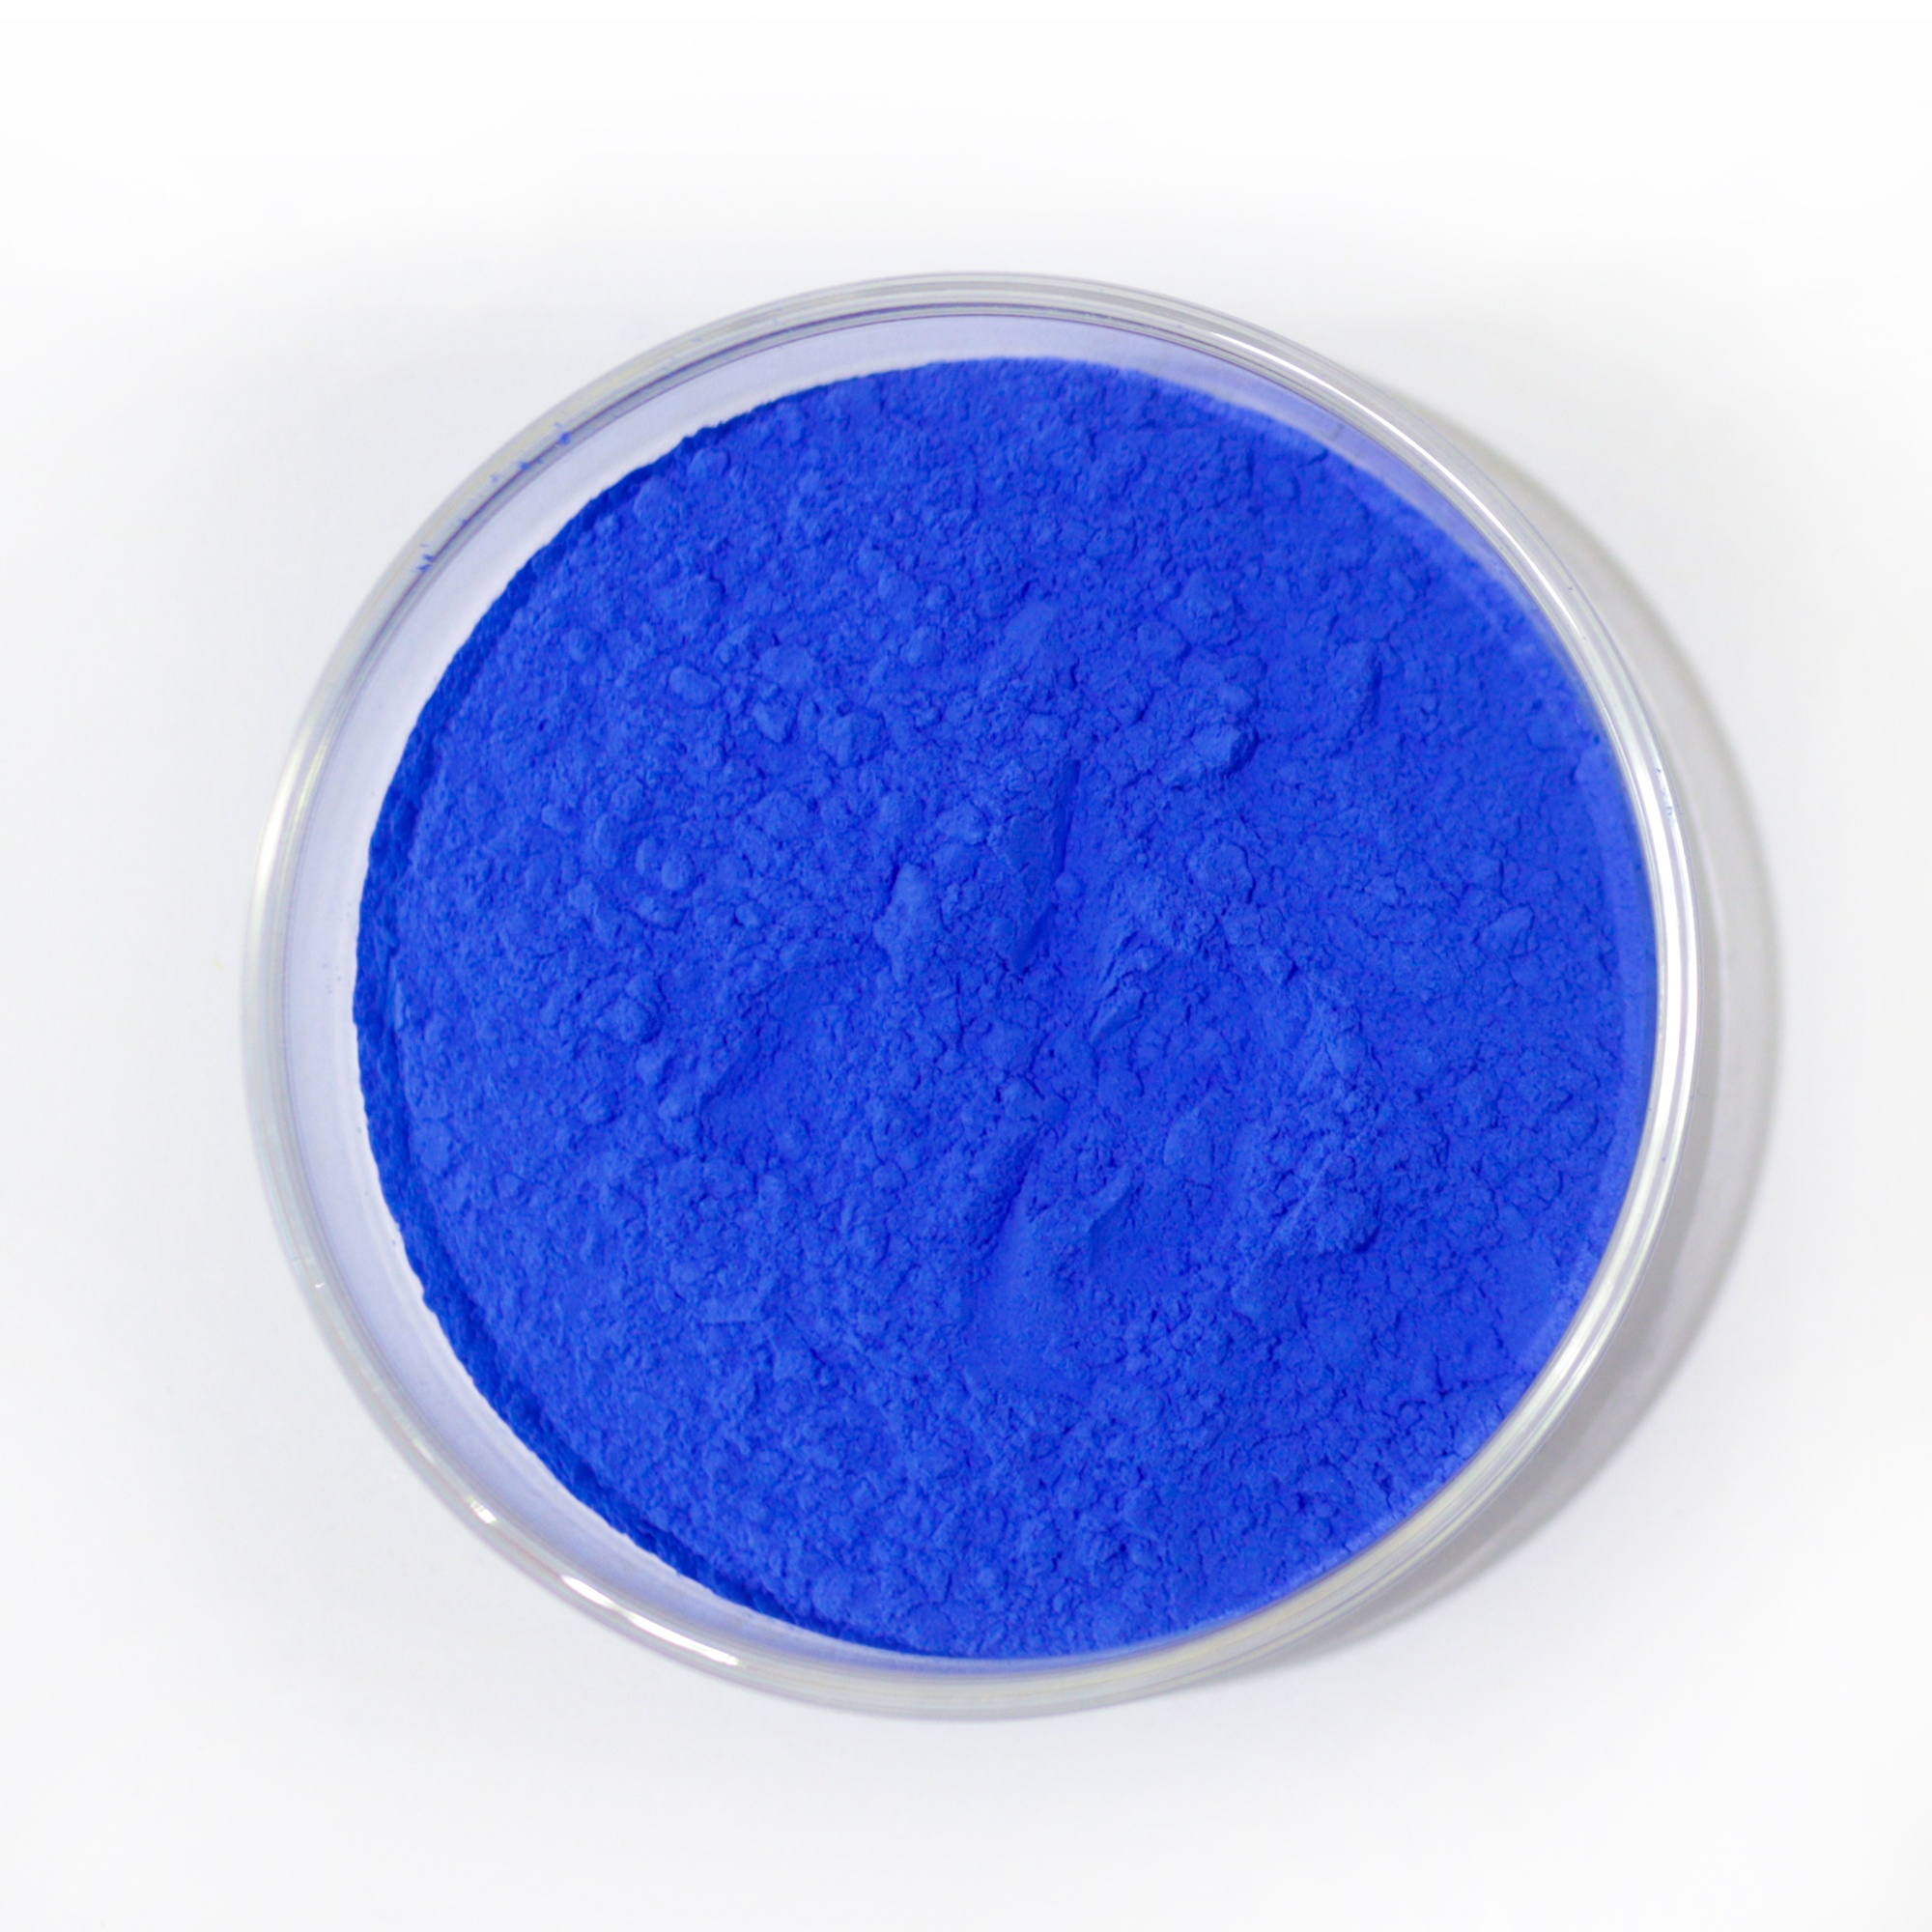 Genuine Cobalt Blue